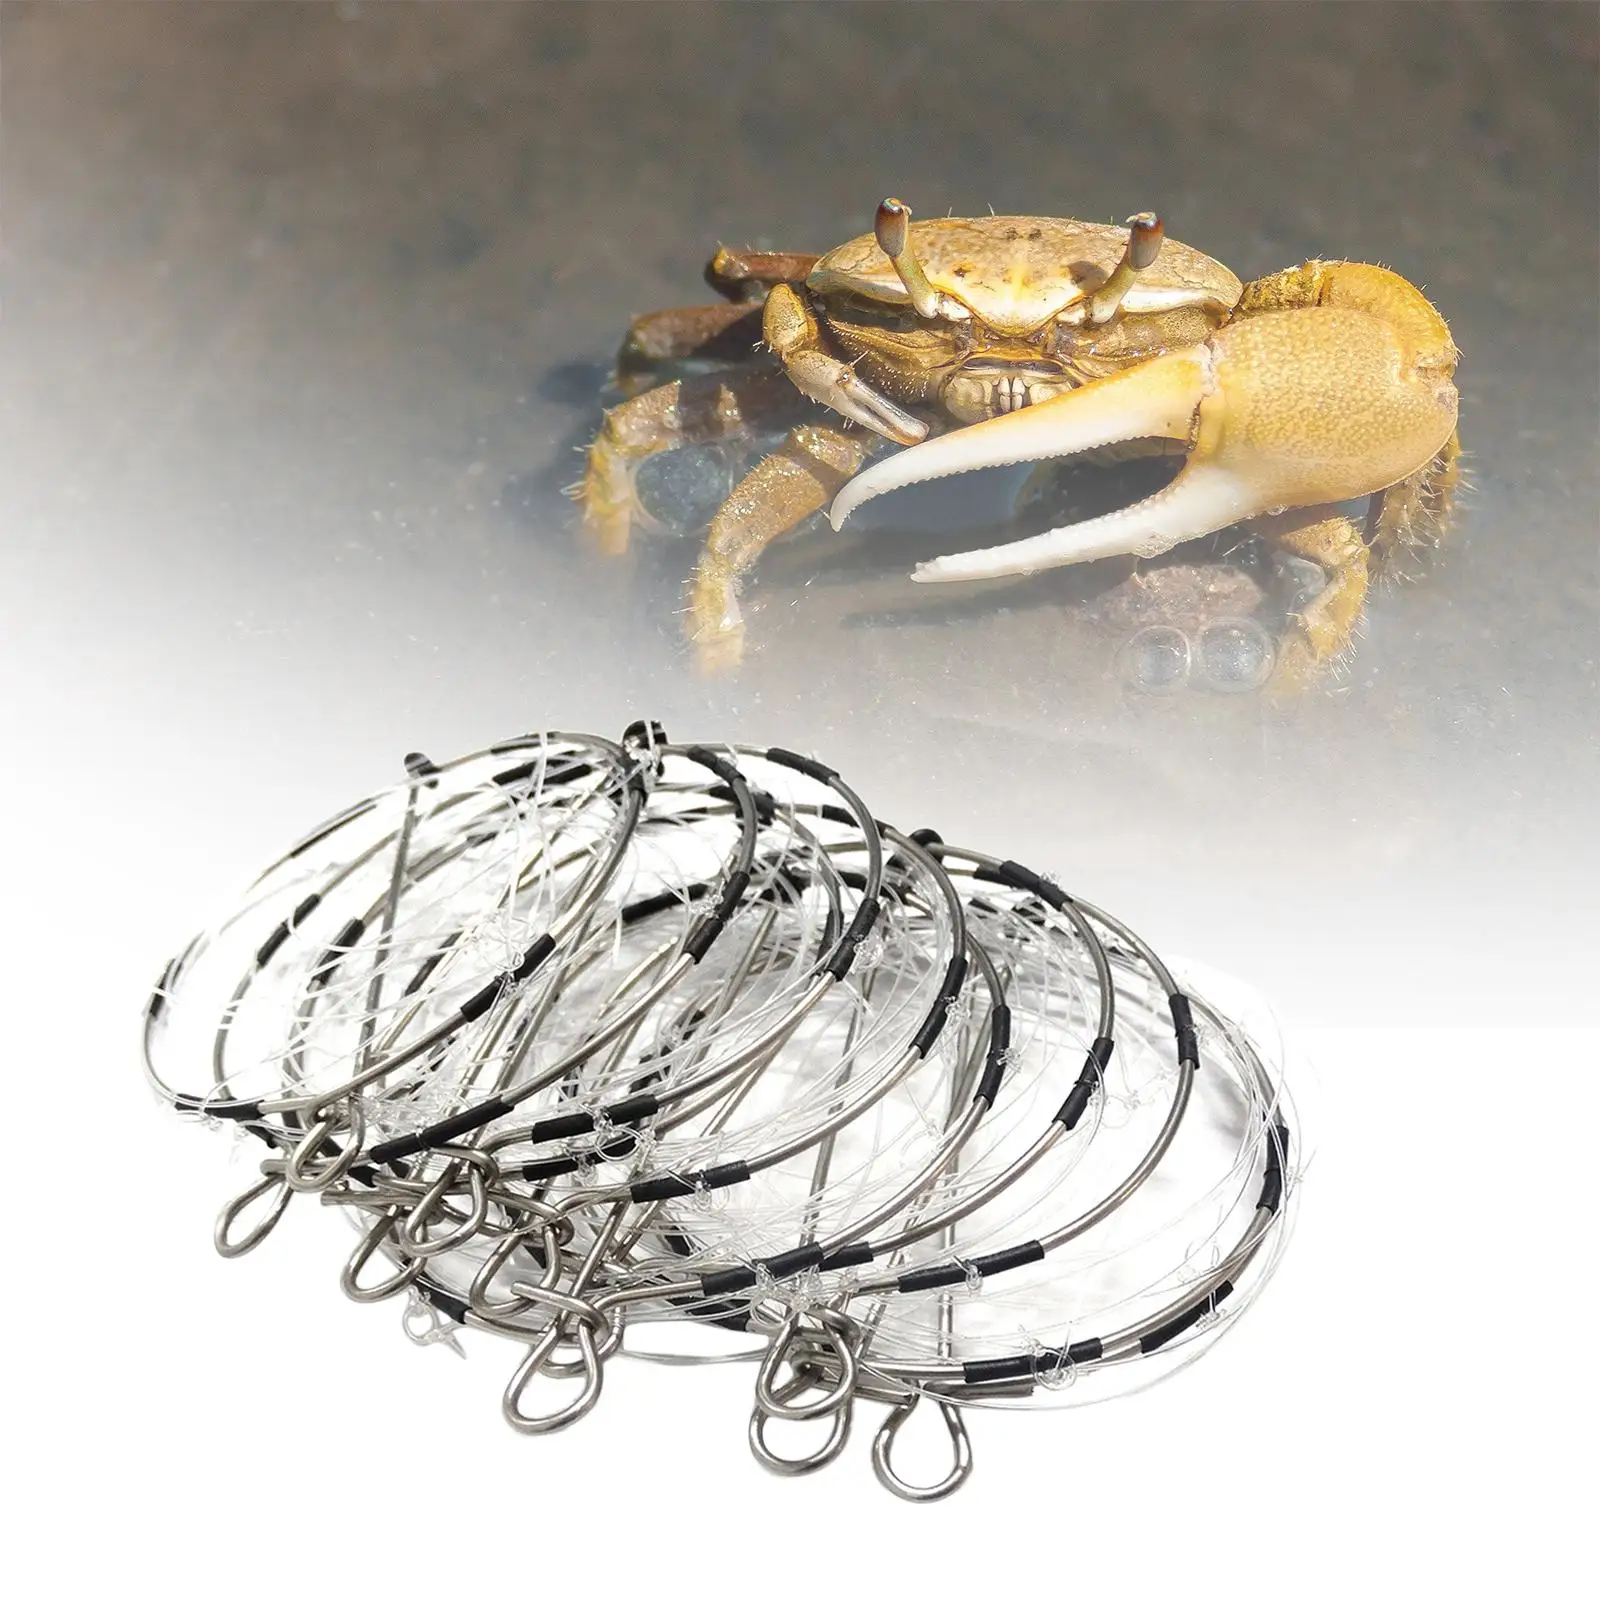 10 Pieces Crab Trap 6-ring Cast Dip Cage Steel for Crawdad Lobster Crayfish